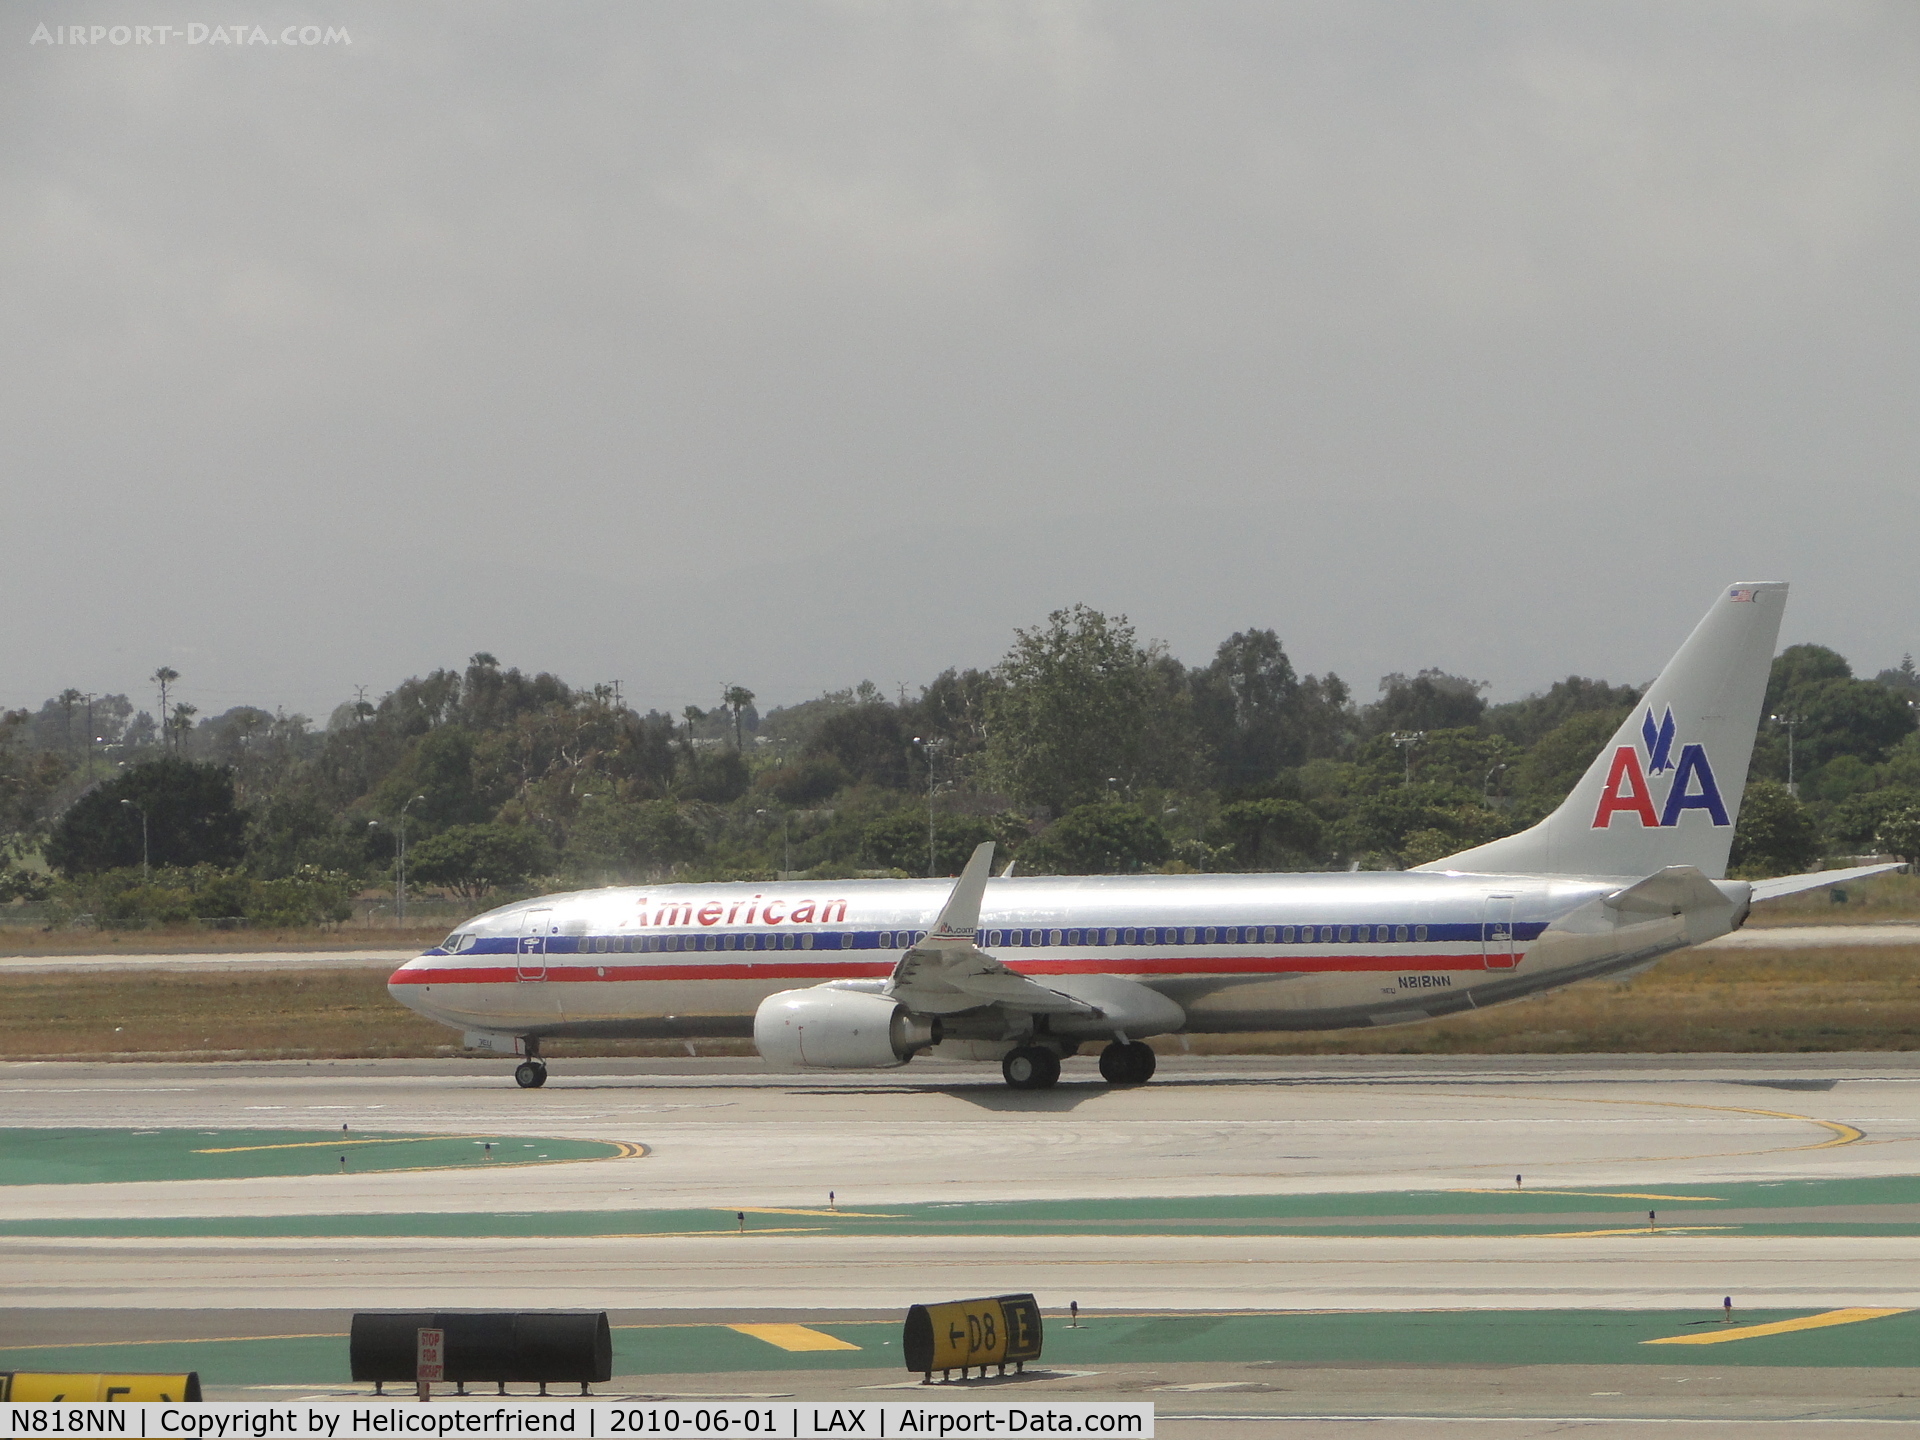 N818NN, 2009 Boeing 737-823 C/N 30910, Taking off runway 24L